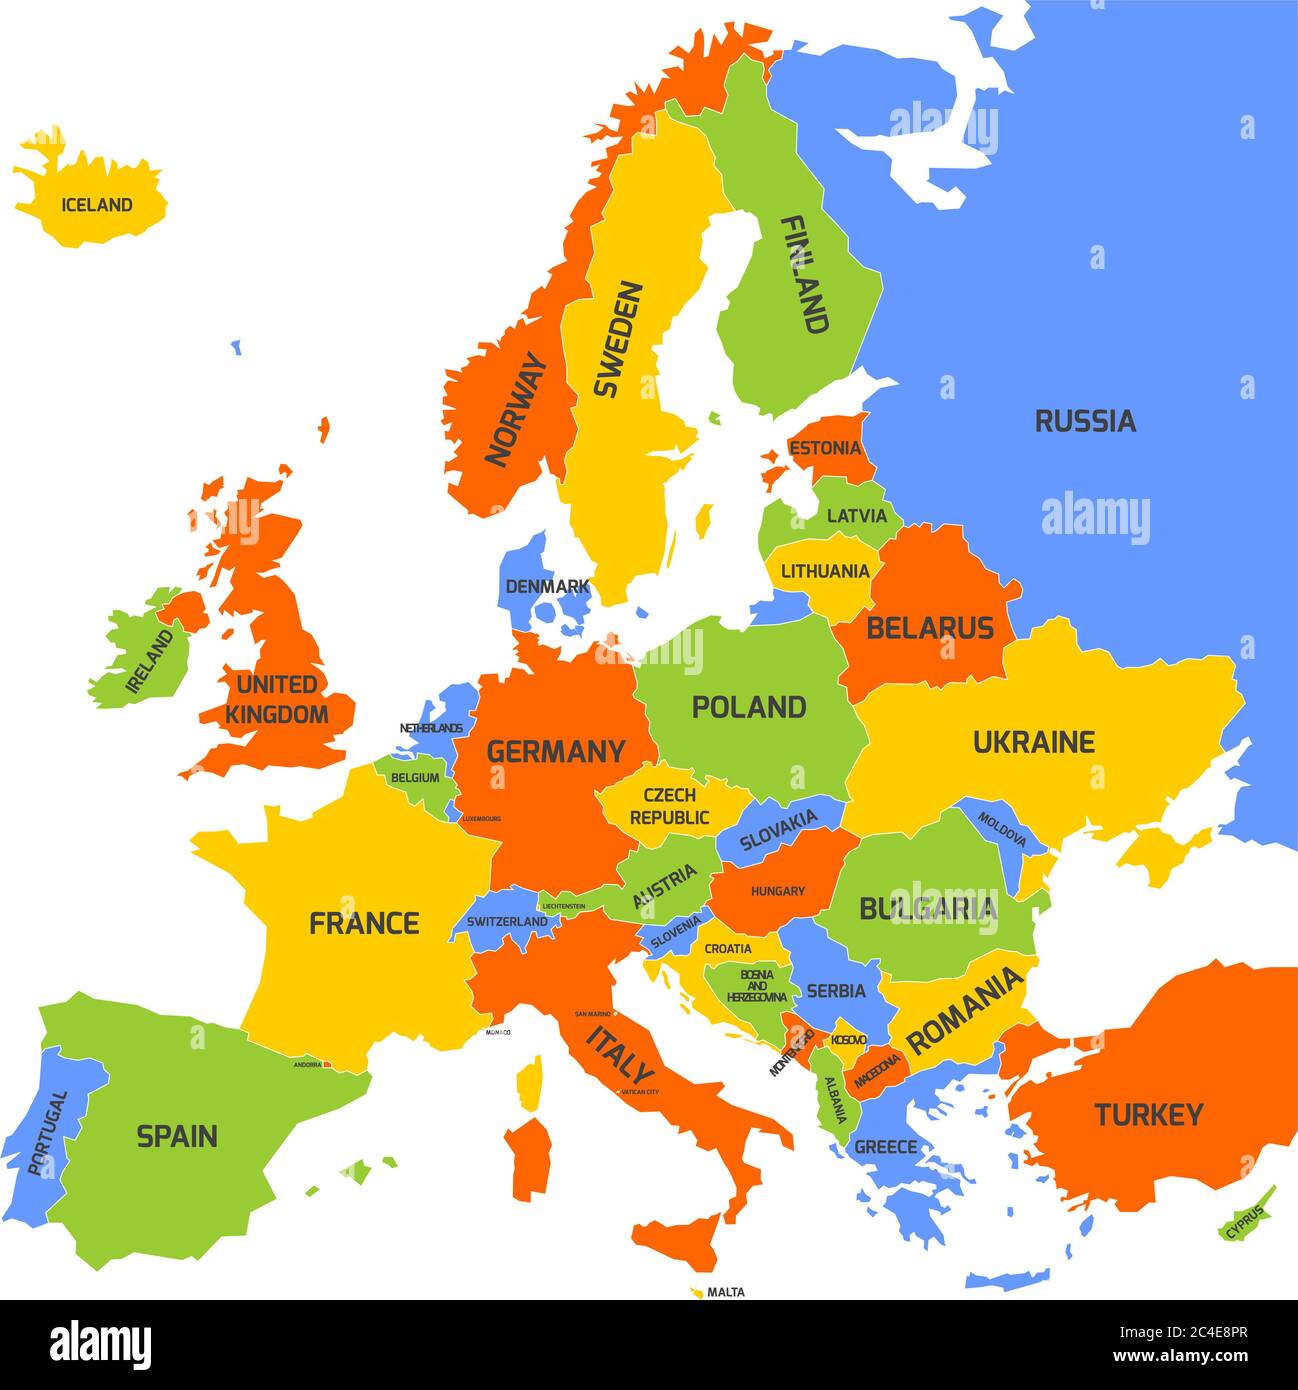 Mappa dell'Europa con i nomi dei paesi sovrani, dei ministeri e del Kosovo inclusi. Mappa vettoriale semplificata con tema a quattro colori su sfondo bianco. Illustrazione Vettoriale